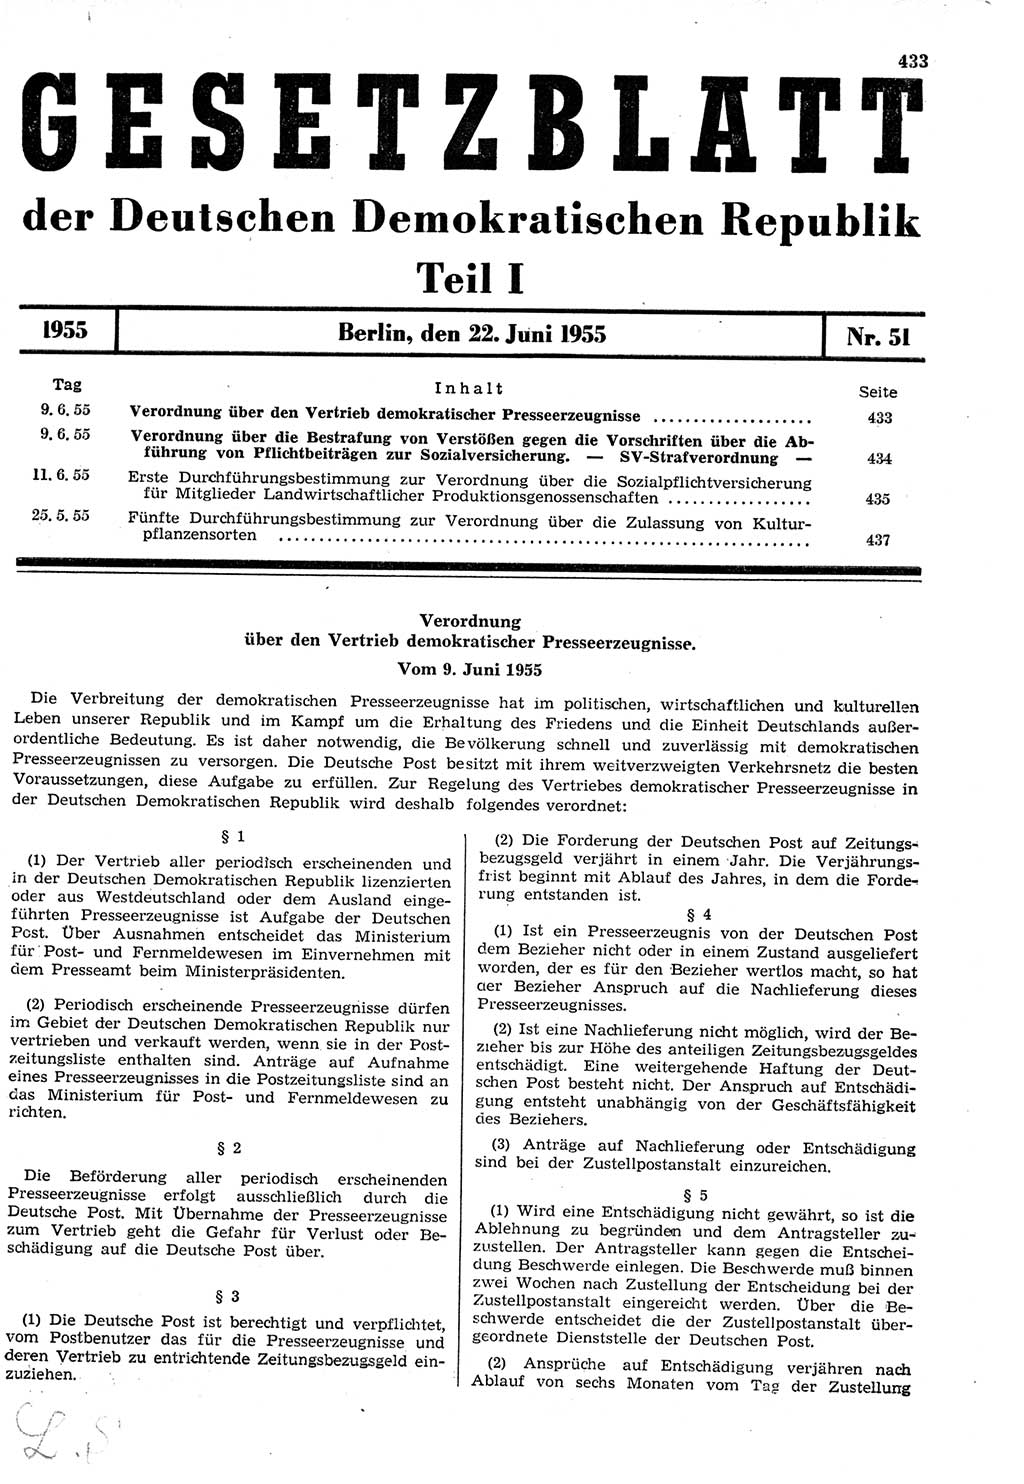 Gesetzblatt (GBl.) der Deutschen Demokratischen Republik (DDR) Teil Ⅰ 1955, Seite 433 (GBl. DDR Ⅰ 1955, S. 433)